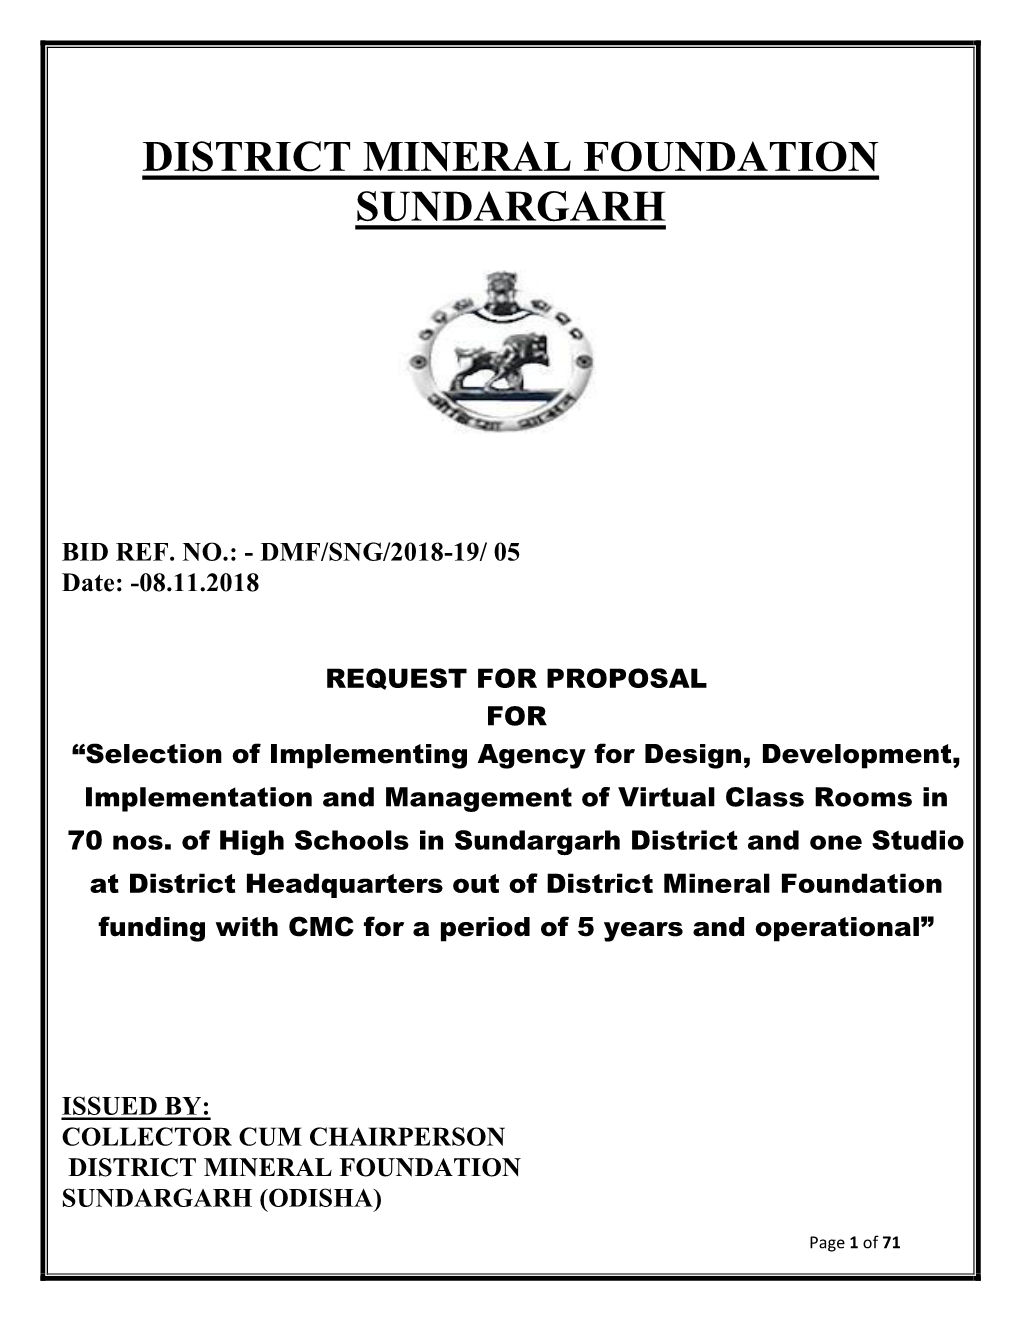 District Mineral Foundation Sundargarh